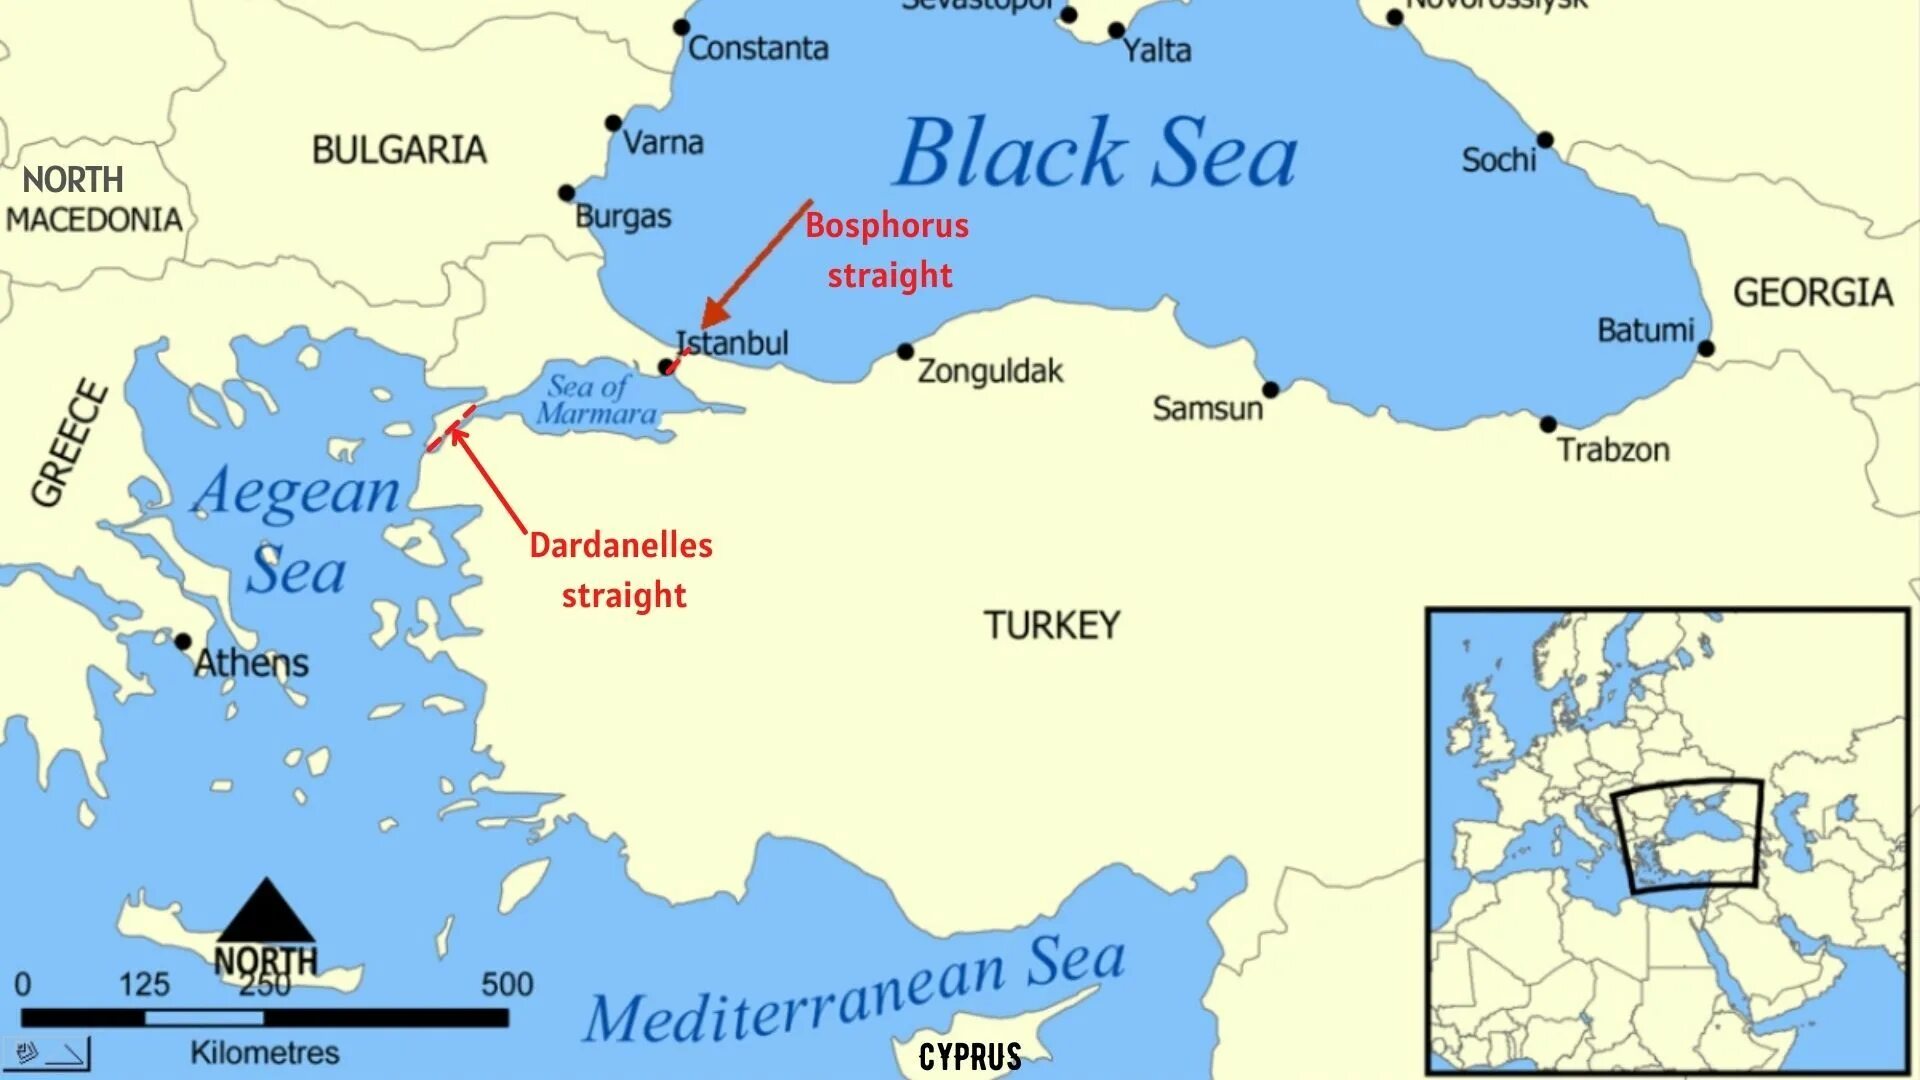 Босфор проливы средиземного моря. Черное море пролив Босфор на карте. Карта Турции пролив Босфор и Дарданеллы. Граница Эгейского и Средиземного моря в Турции. Турция на карте с морями.